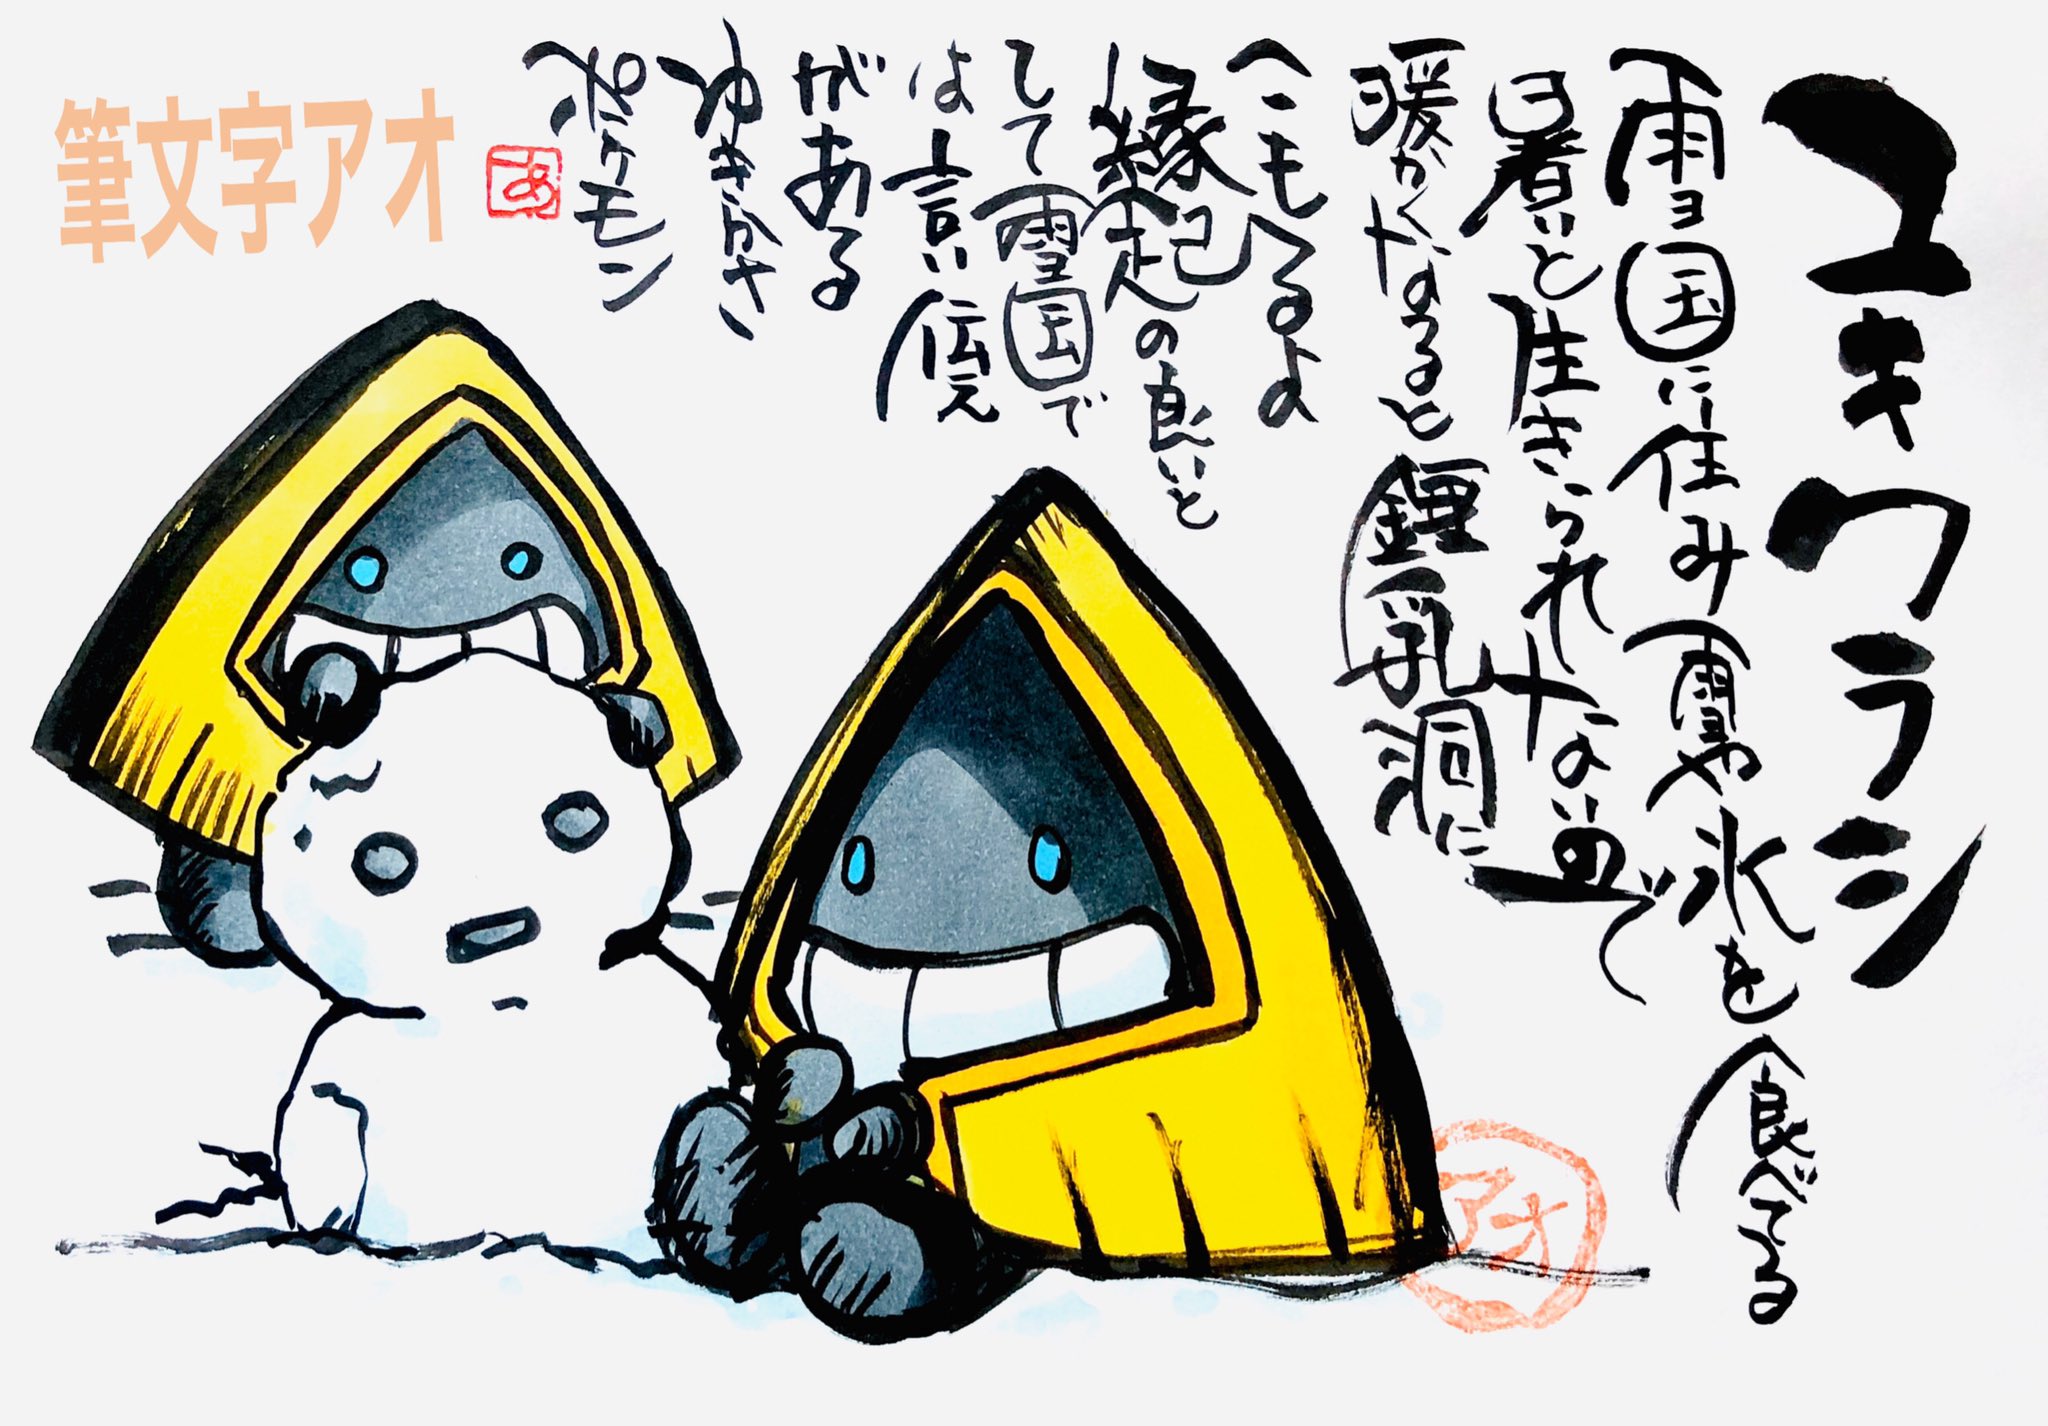 Aki Shimamoto ポケモン絵師休憩中エネルギーアートクリエーター 筆ペンでポケモンを描く ユキワラシ 雪国に住み雪や氷を食べてる 暑いと生きていられないので 暖かくなると鍾乳洞にこもるよ 縁起の良いとして雪国では 言い伝えがあるゆきかさポケモン